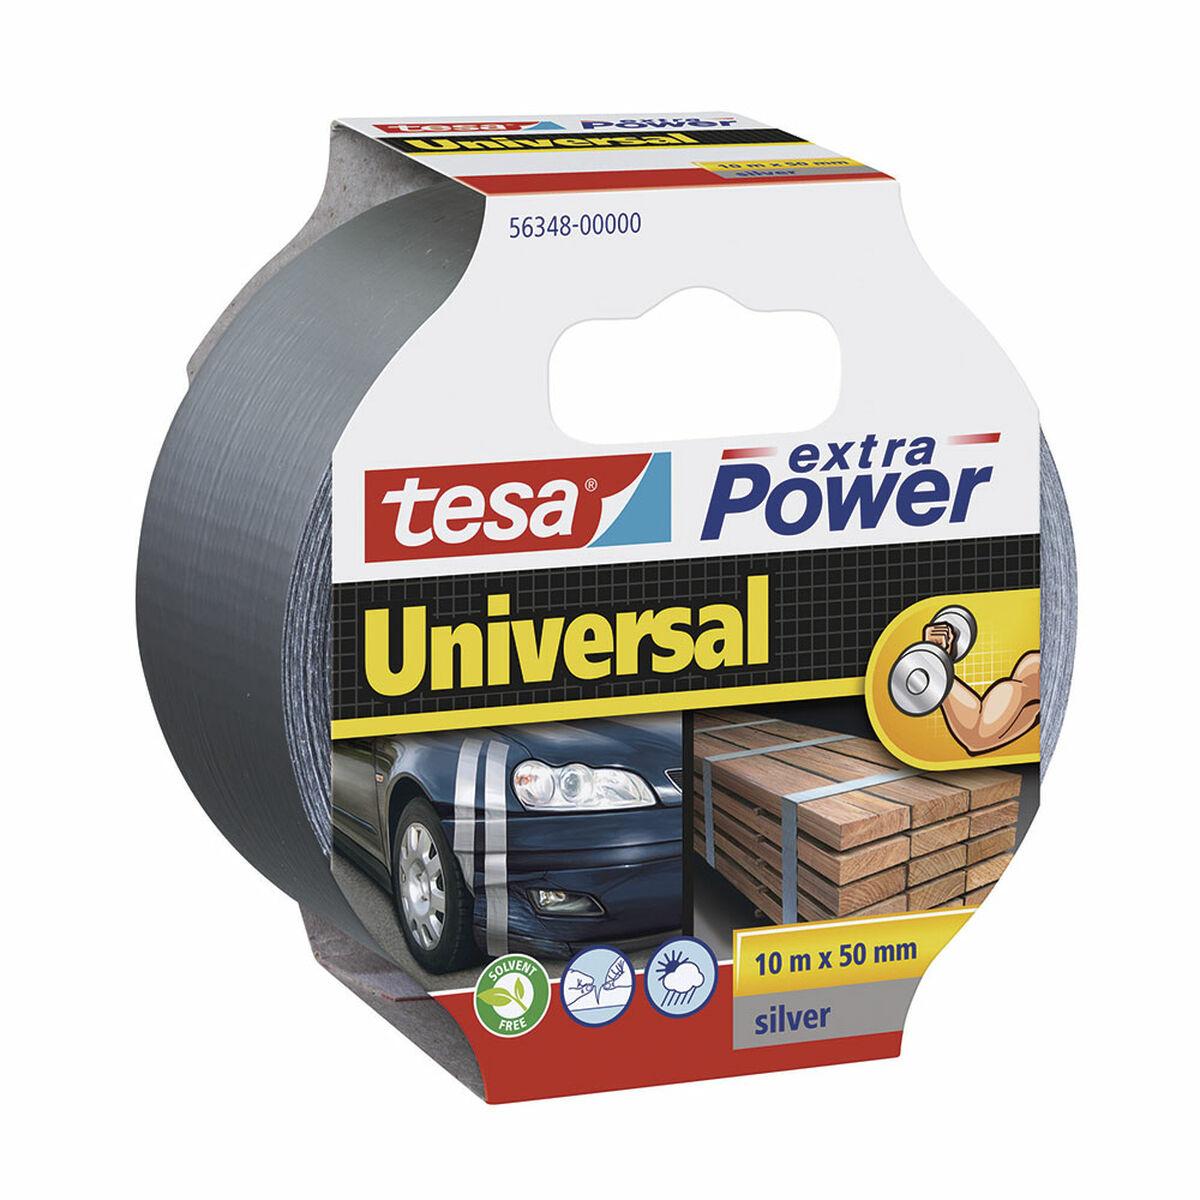 Se Tesa Extra Power Universal 10m 50 mm Silver hos Boligcenter.dk